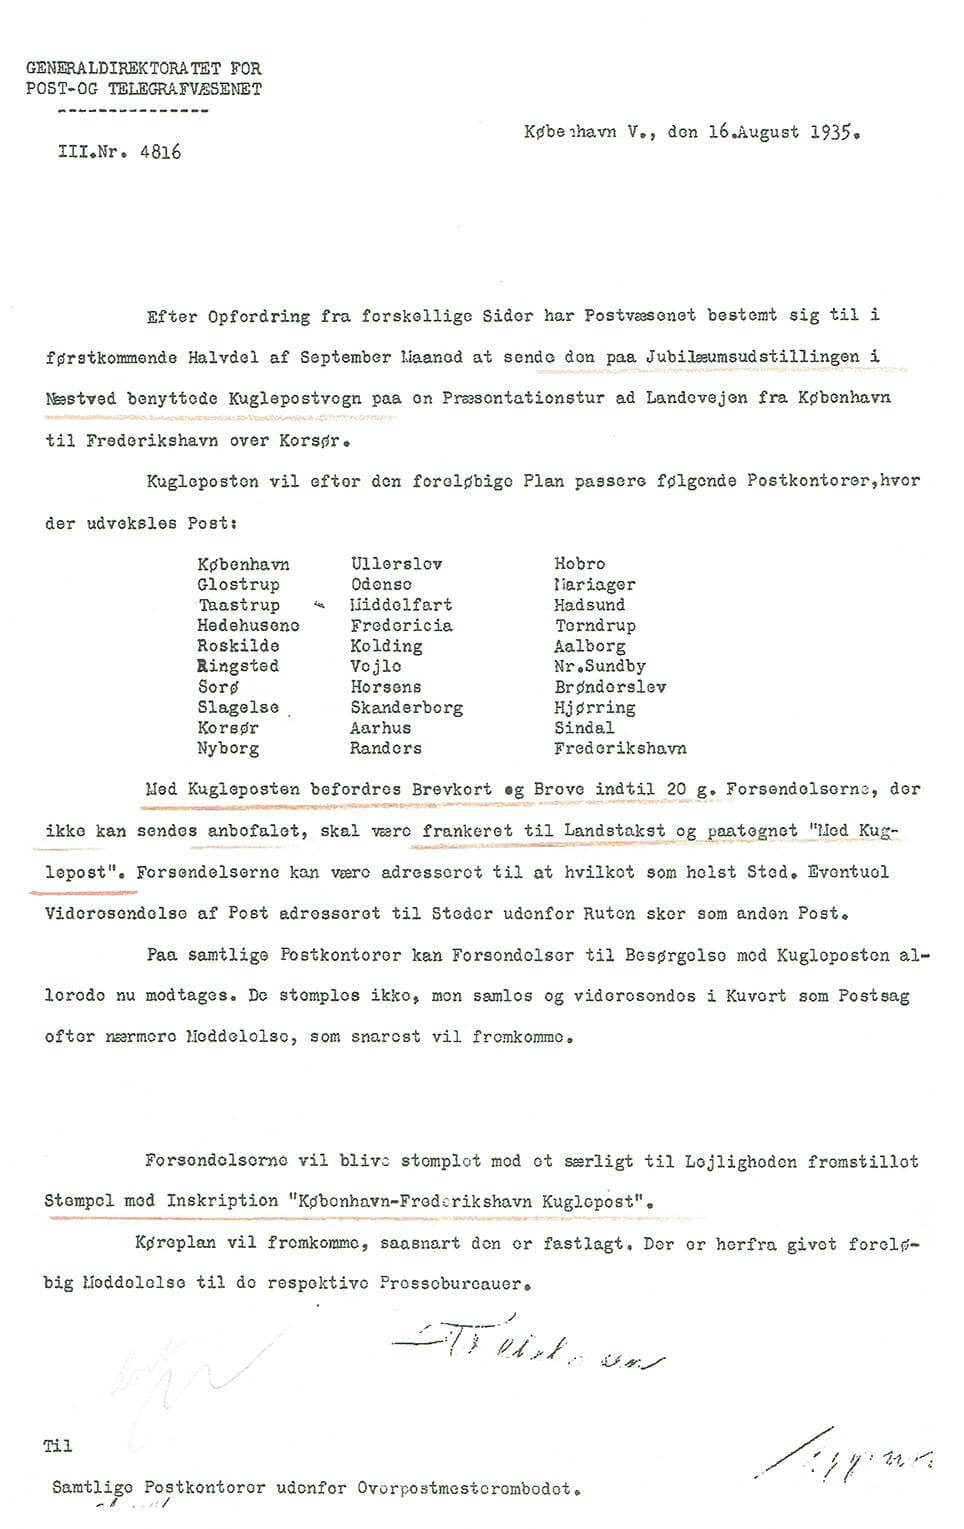 Skrivelse fra Generaldirektoratet for Post- og Telegrafvæsenet, 16. august 1935.